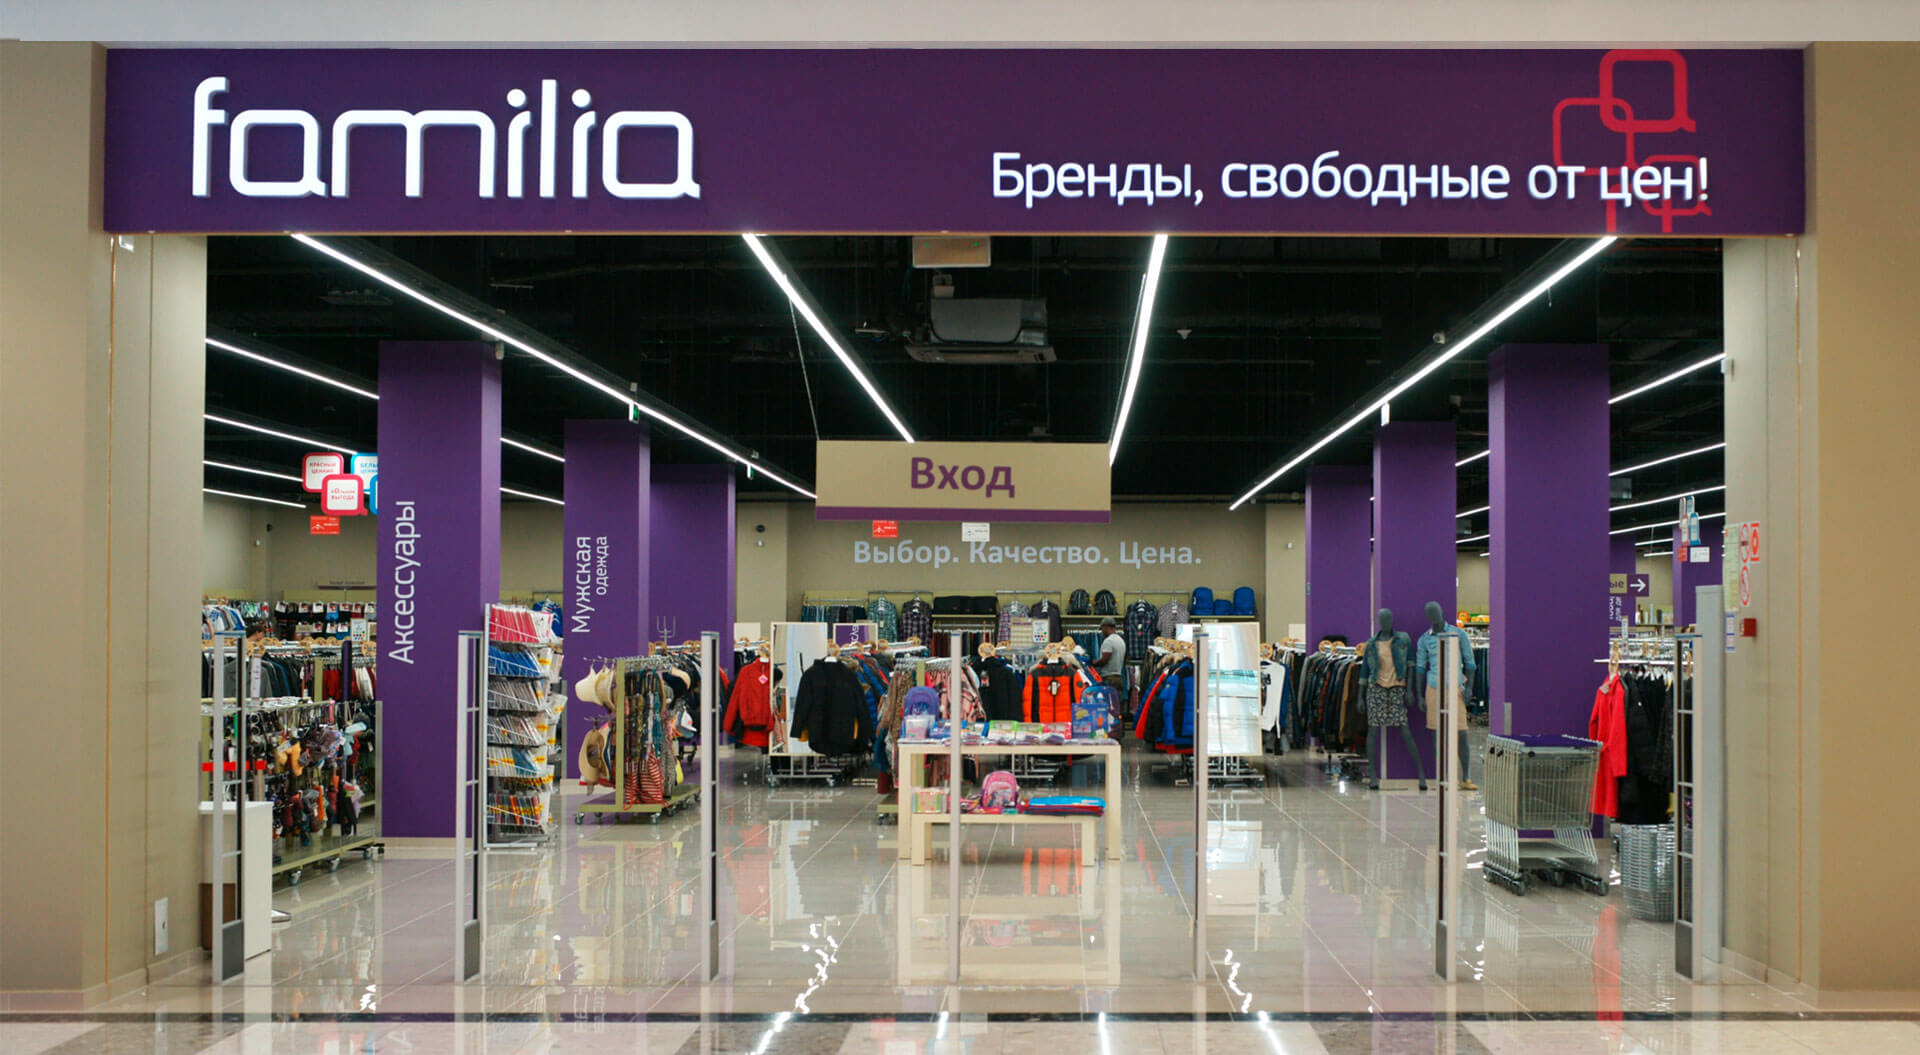 Familia fashion stores brand identity Russia, store entrance